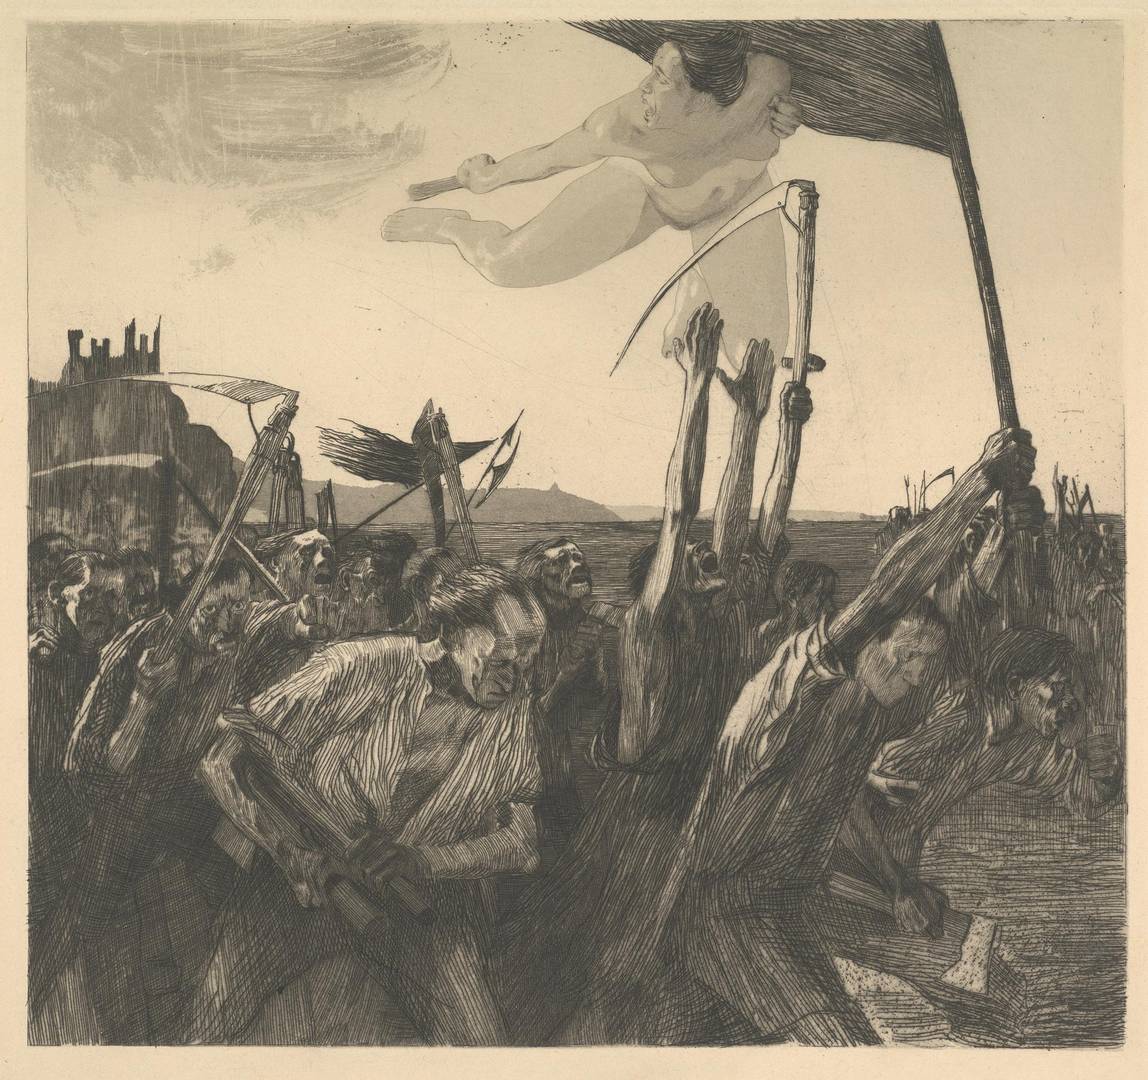 Кете Кольвиц. Восстание. Офорт из цикла «Крестьянская война». 1899